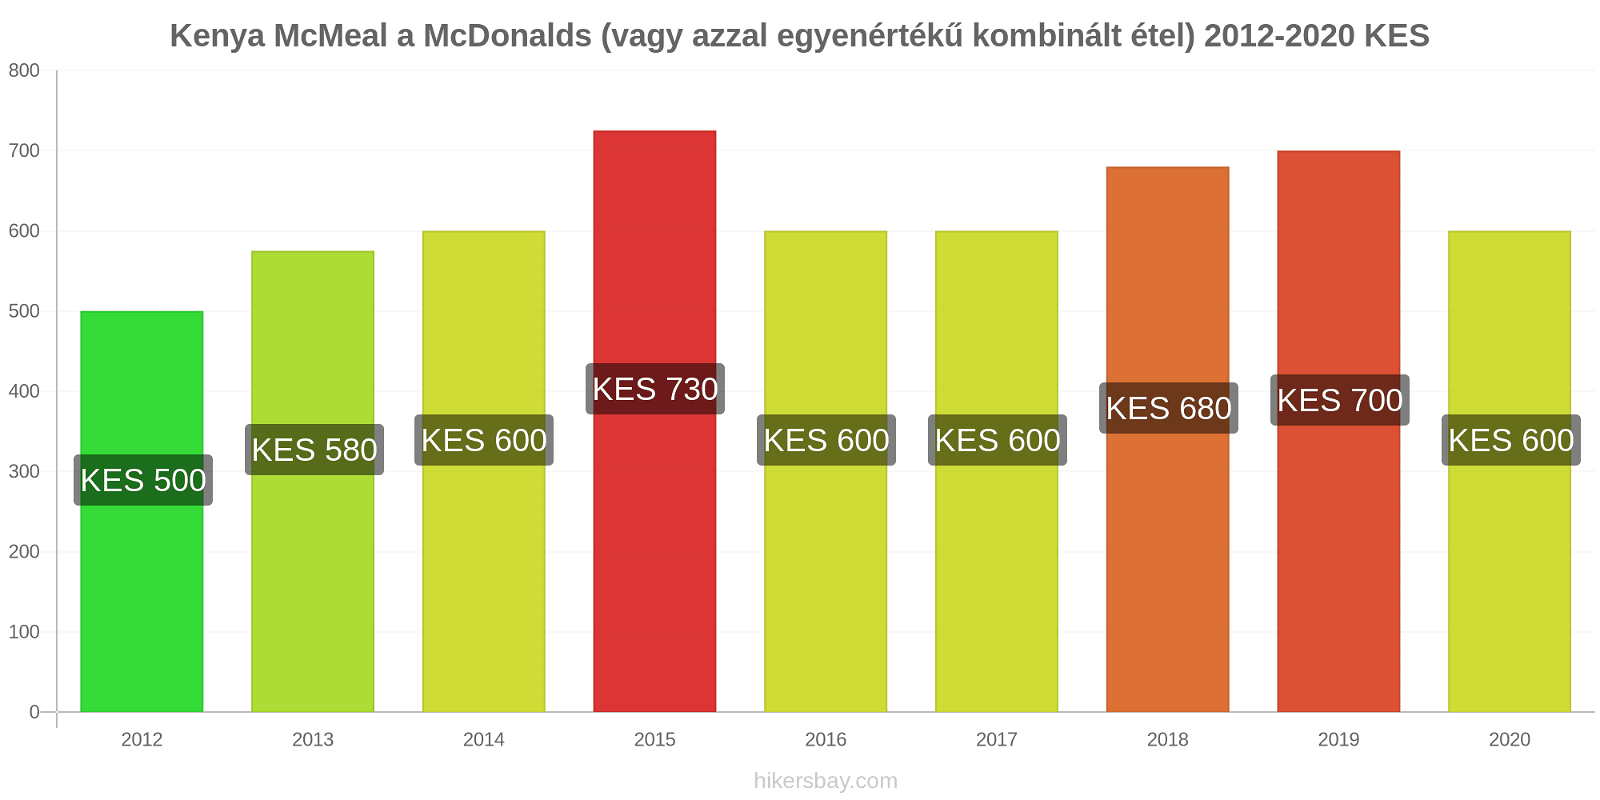 Kenya árváltozások McMeal a McDonalds (vagy azzal egyenértékű kombinált étel) hikersbay.com